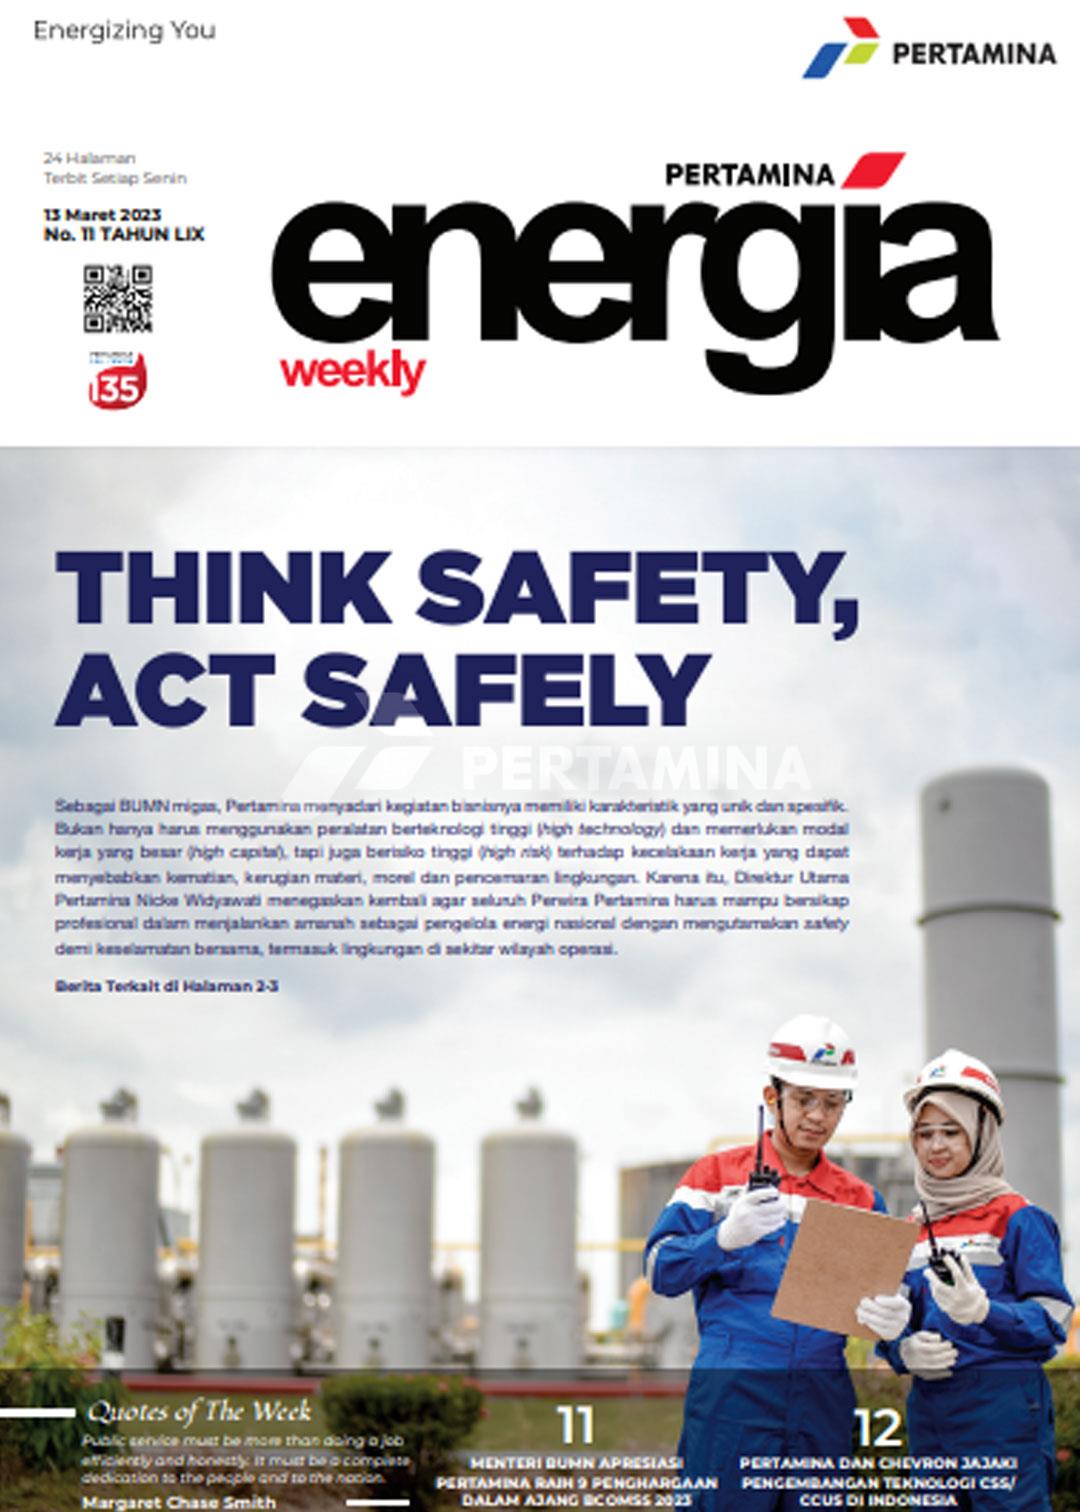 Energia Weekly 2nd Week of March 2023